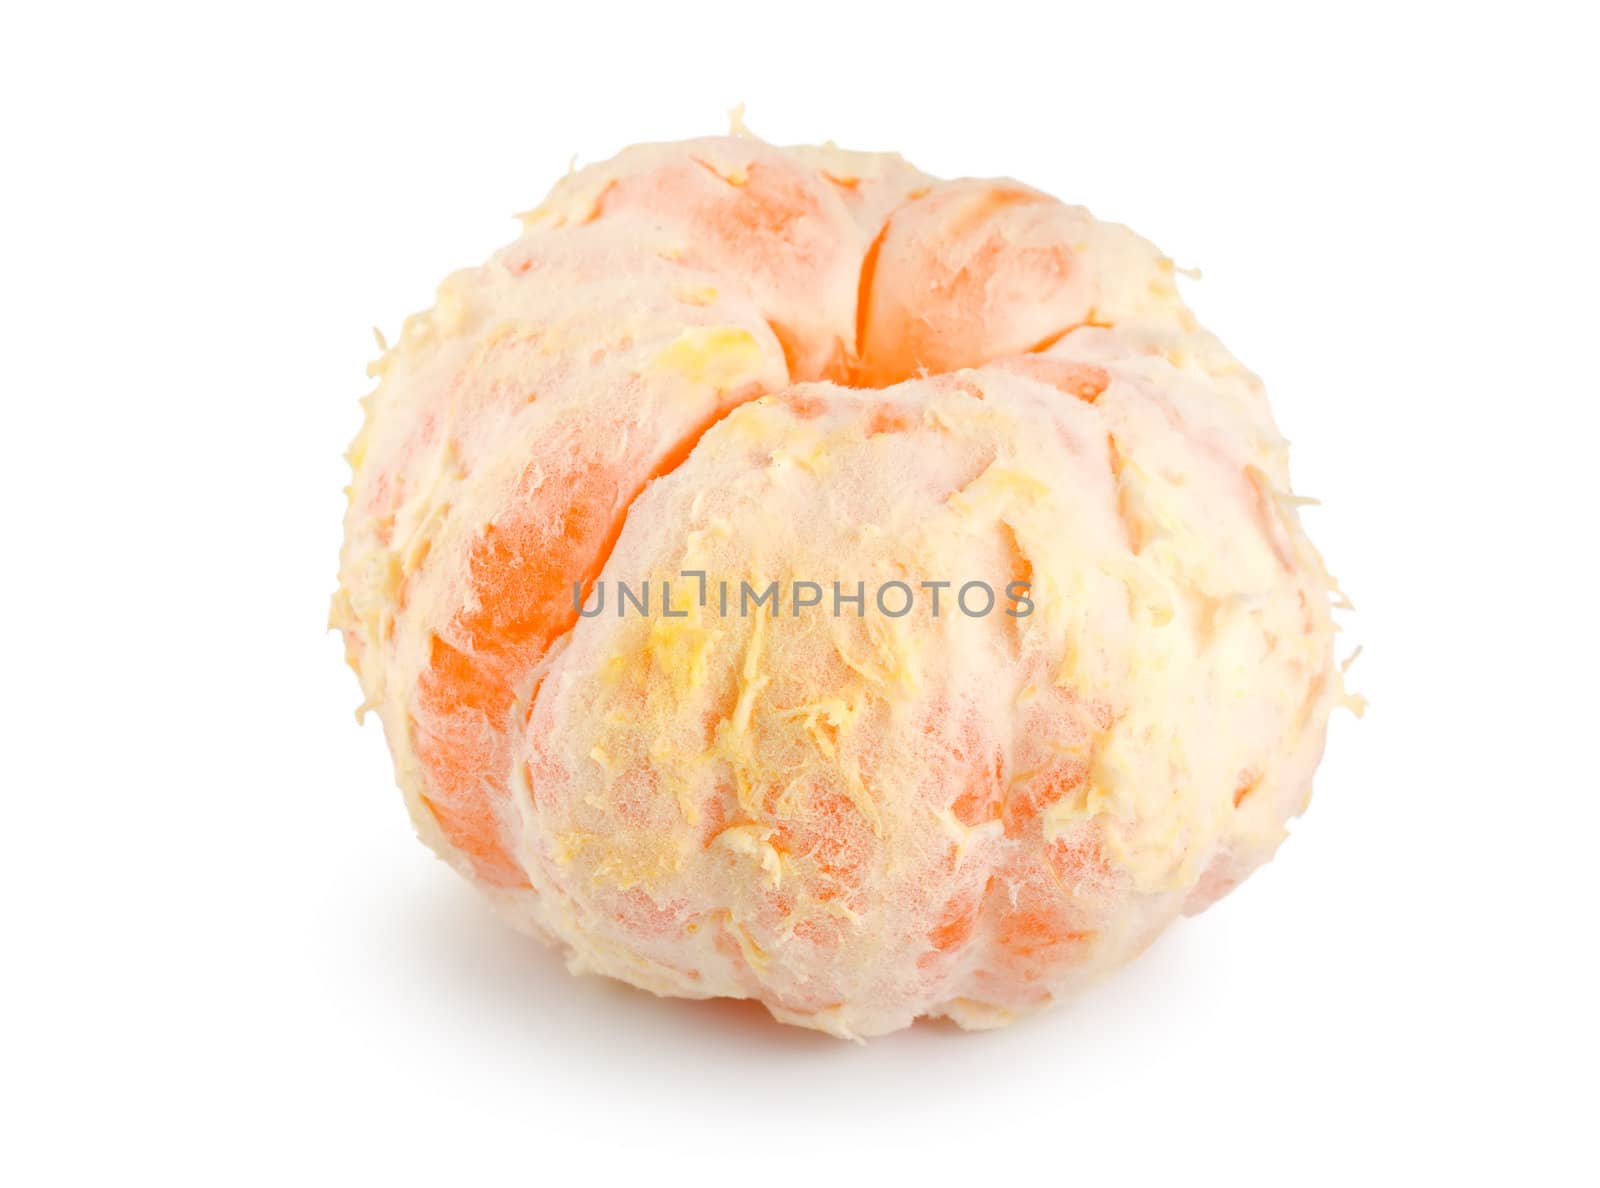 Peeled mandarin isolated on a white background